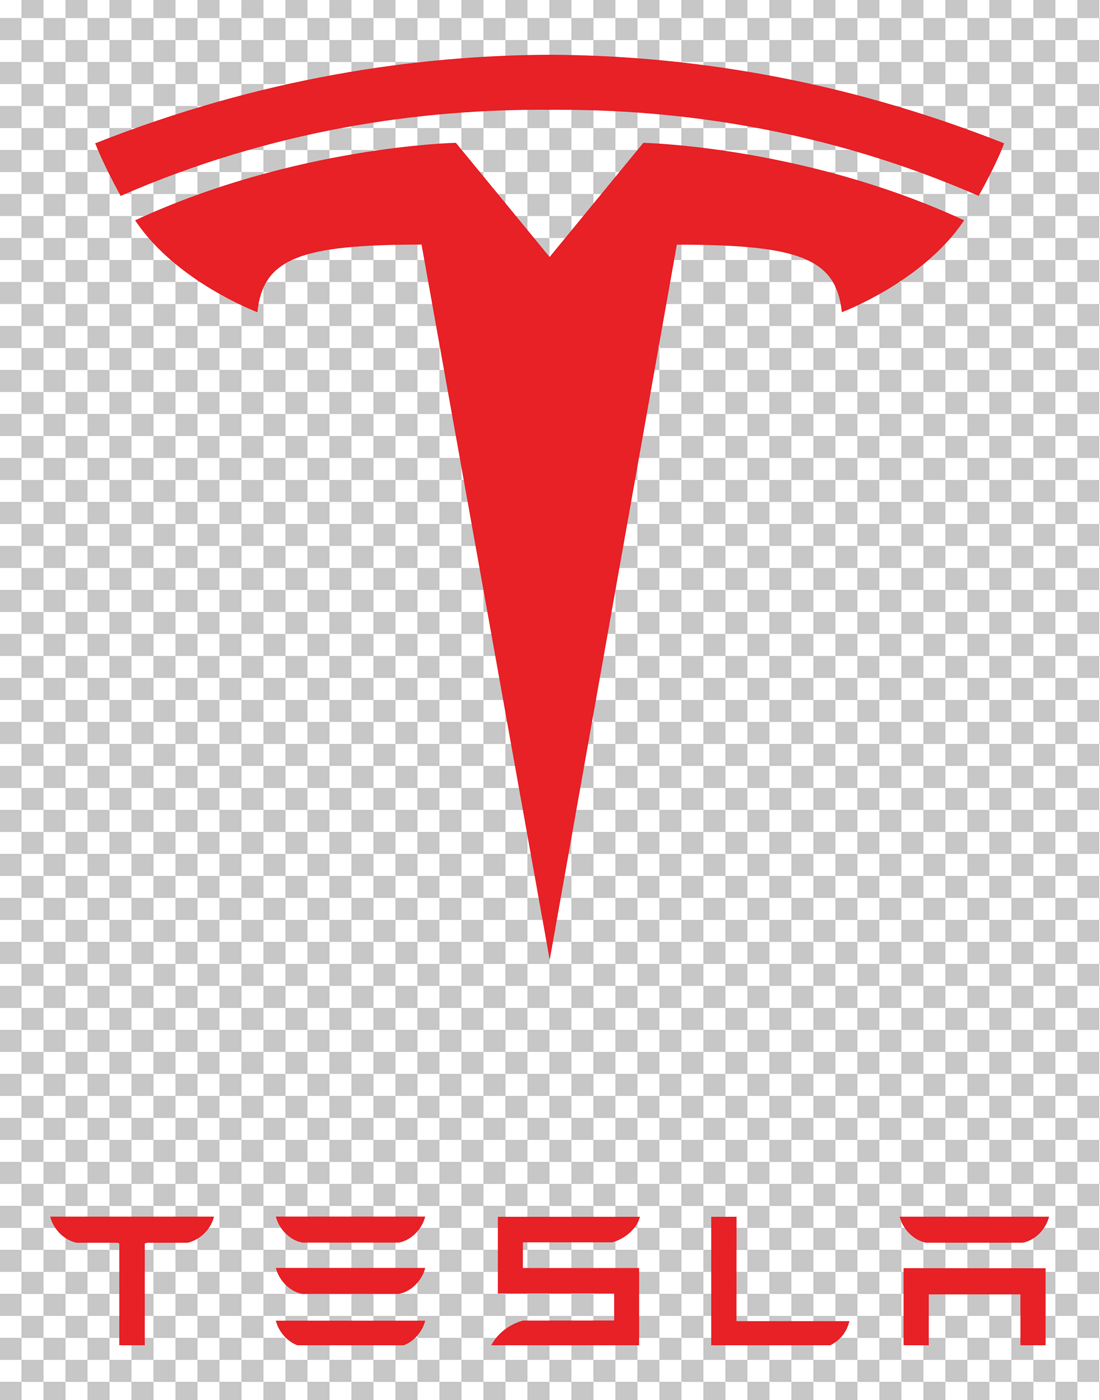 Tesla logo png image